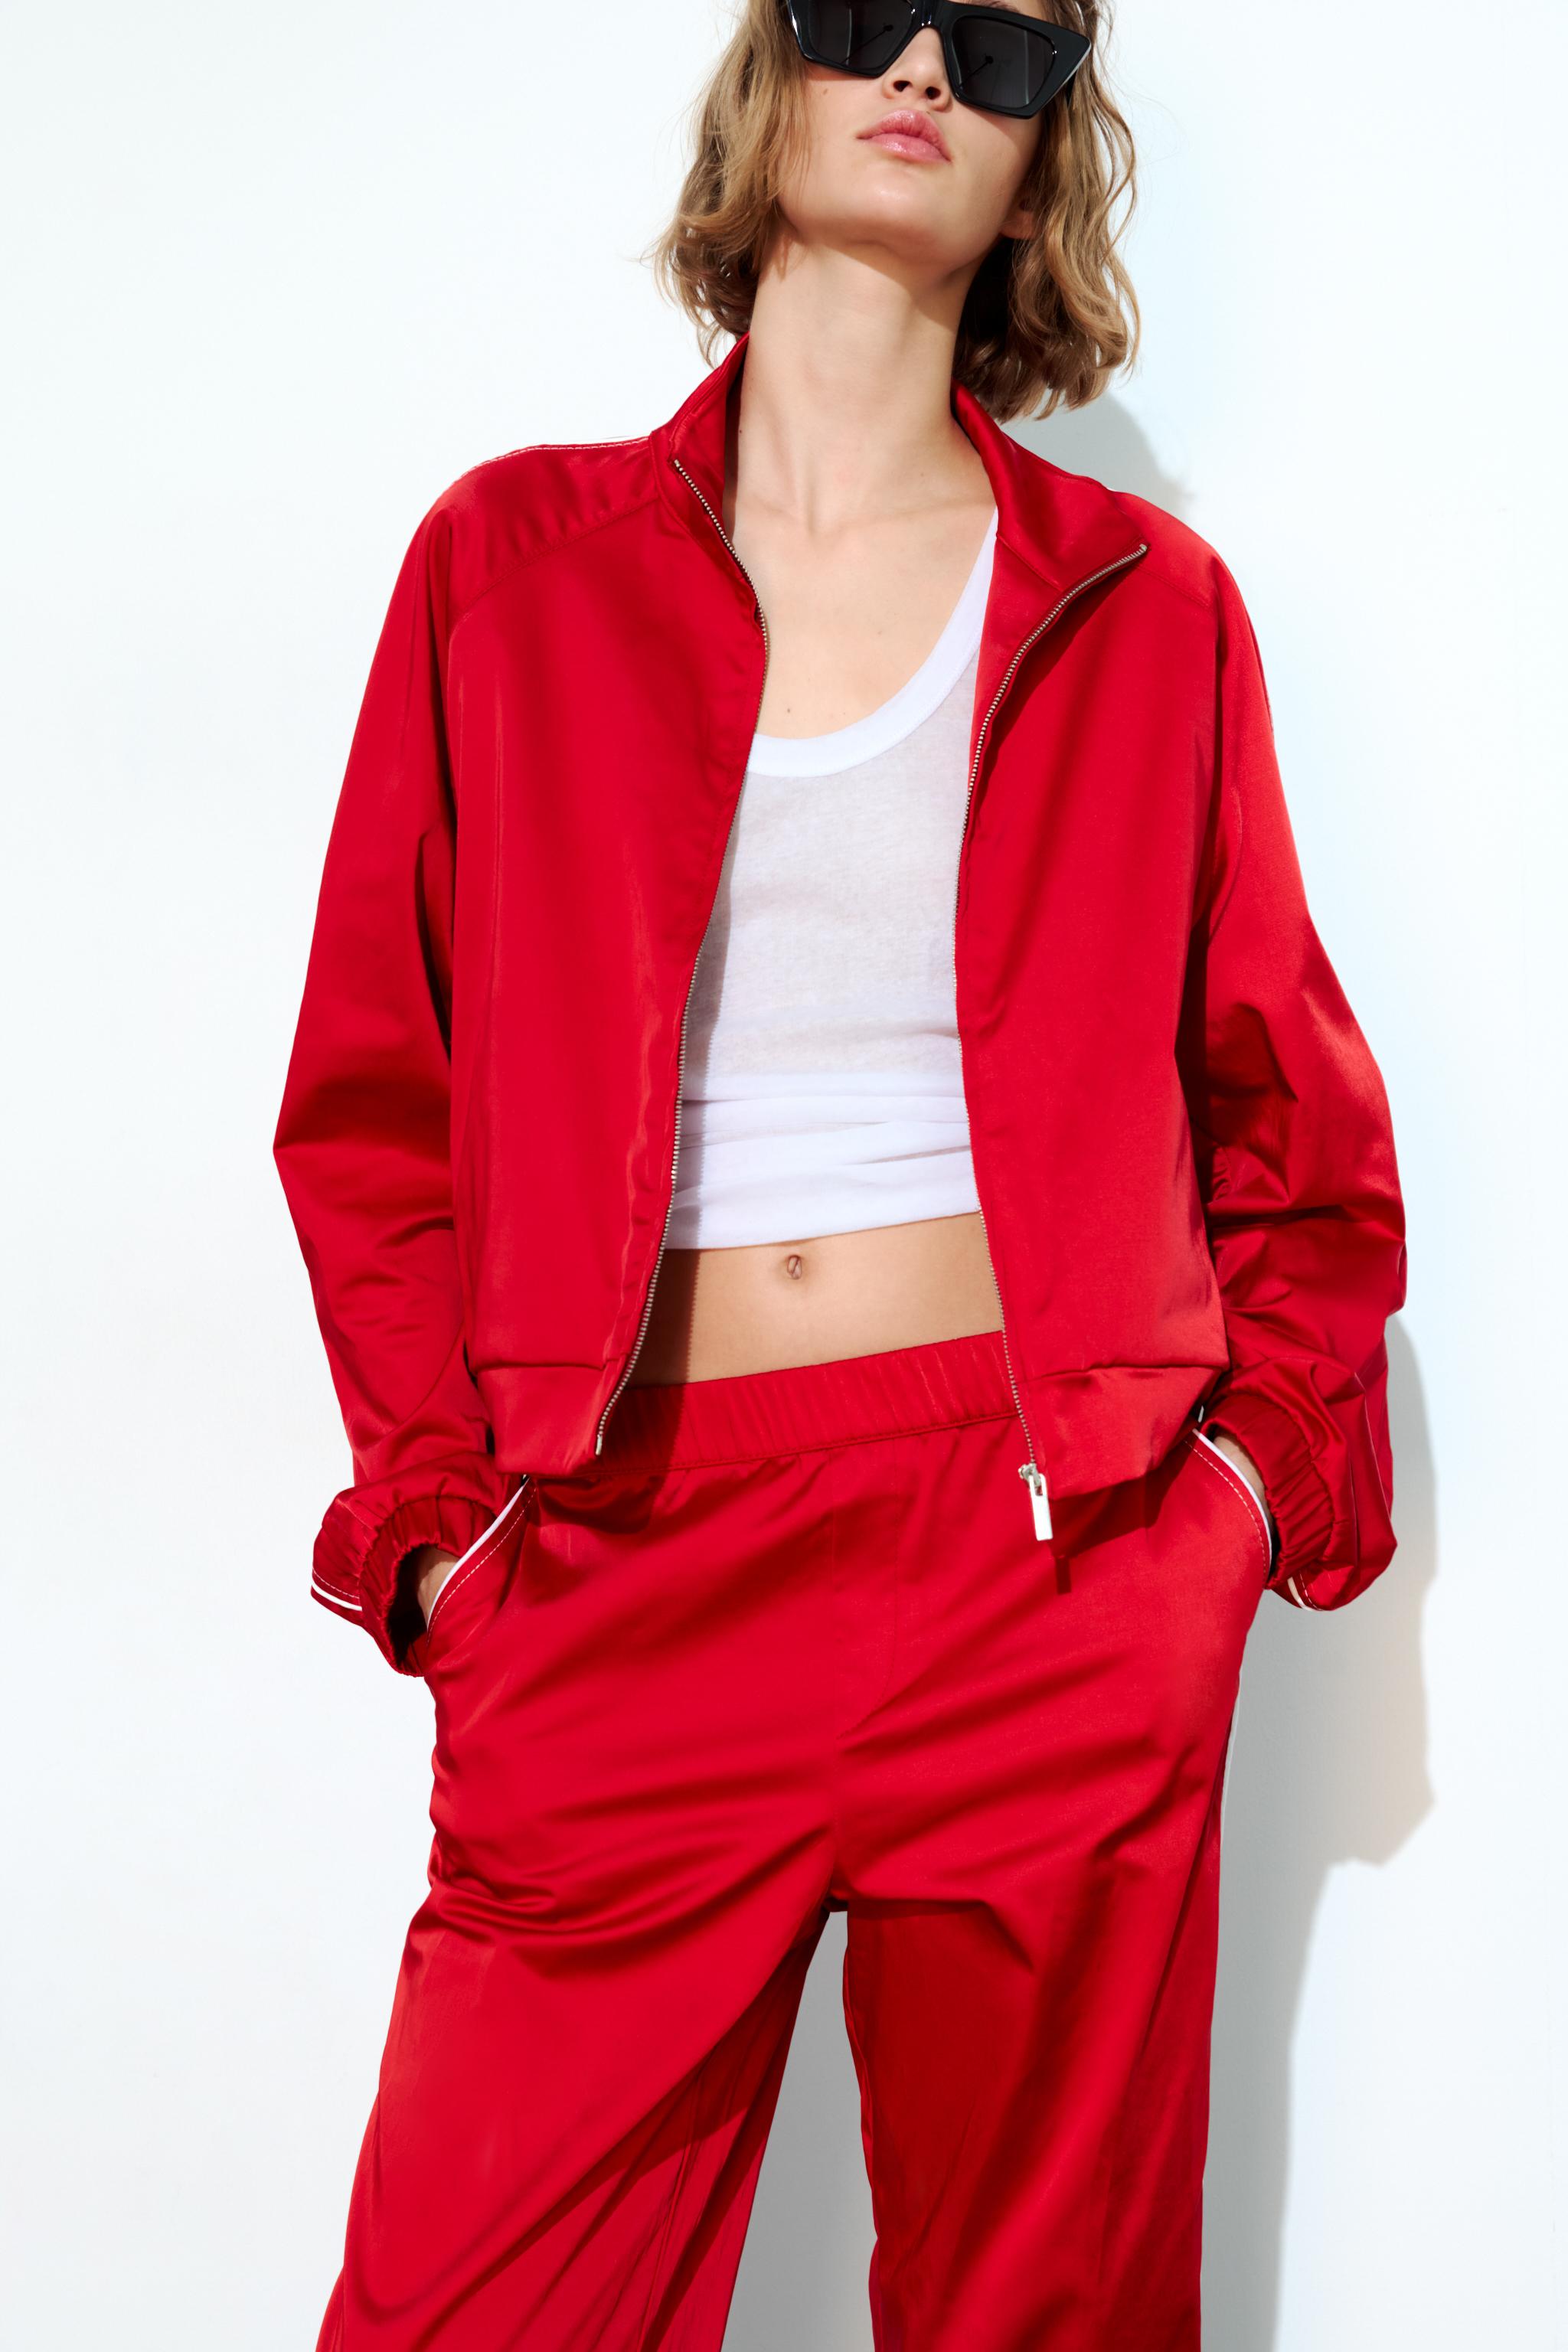 Zara Pantalons Slim Femme De Couleur Rouge 2141906-rouge0 - Modz